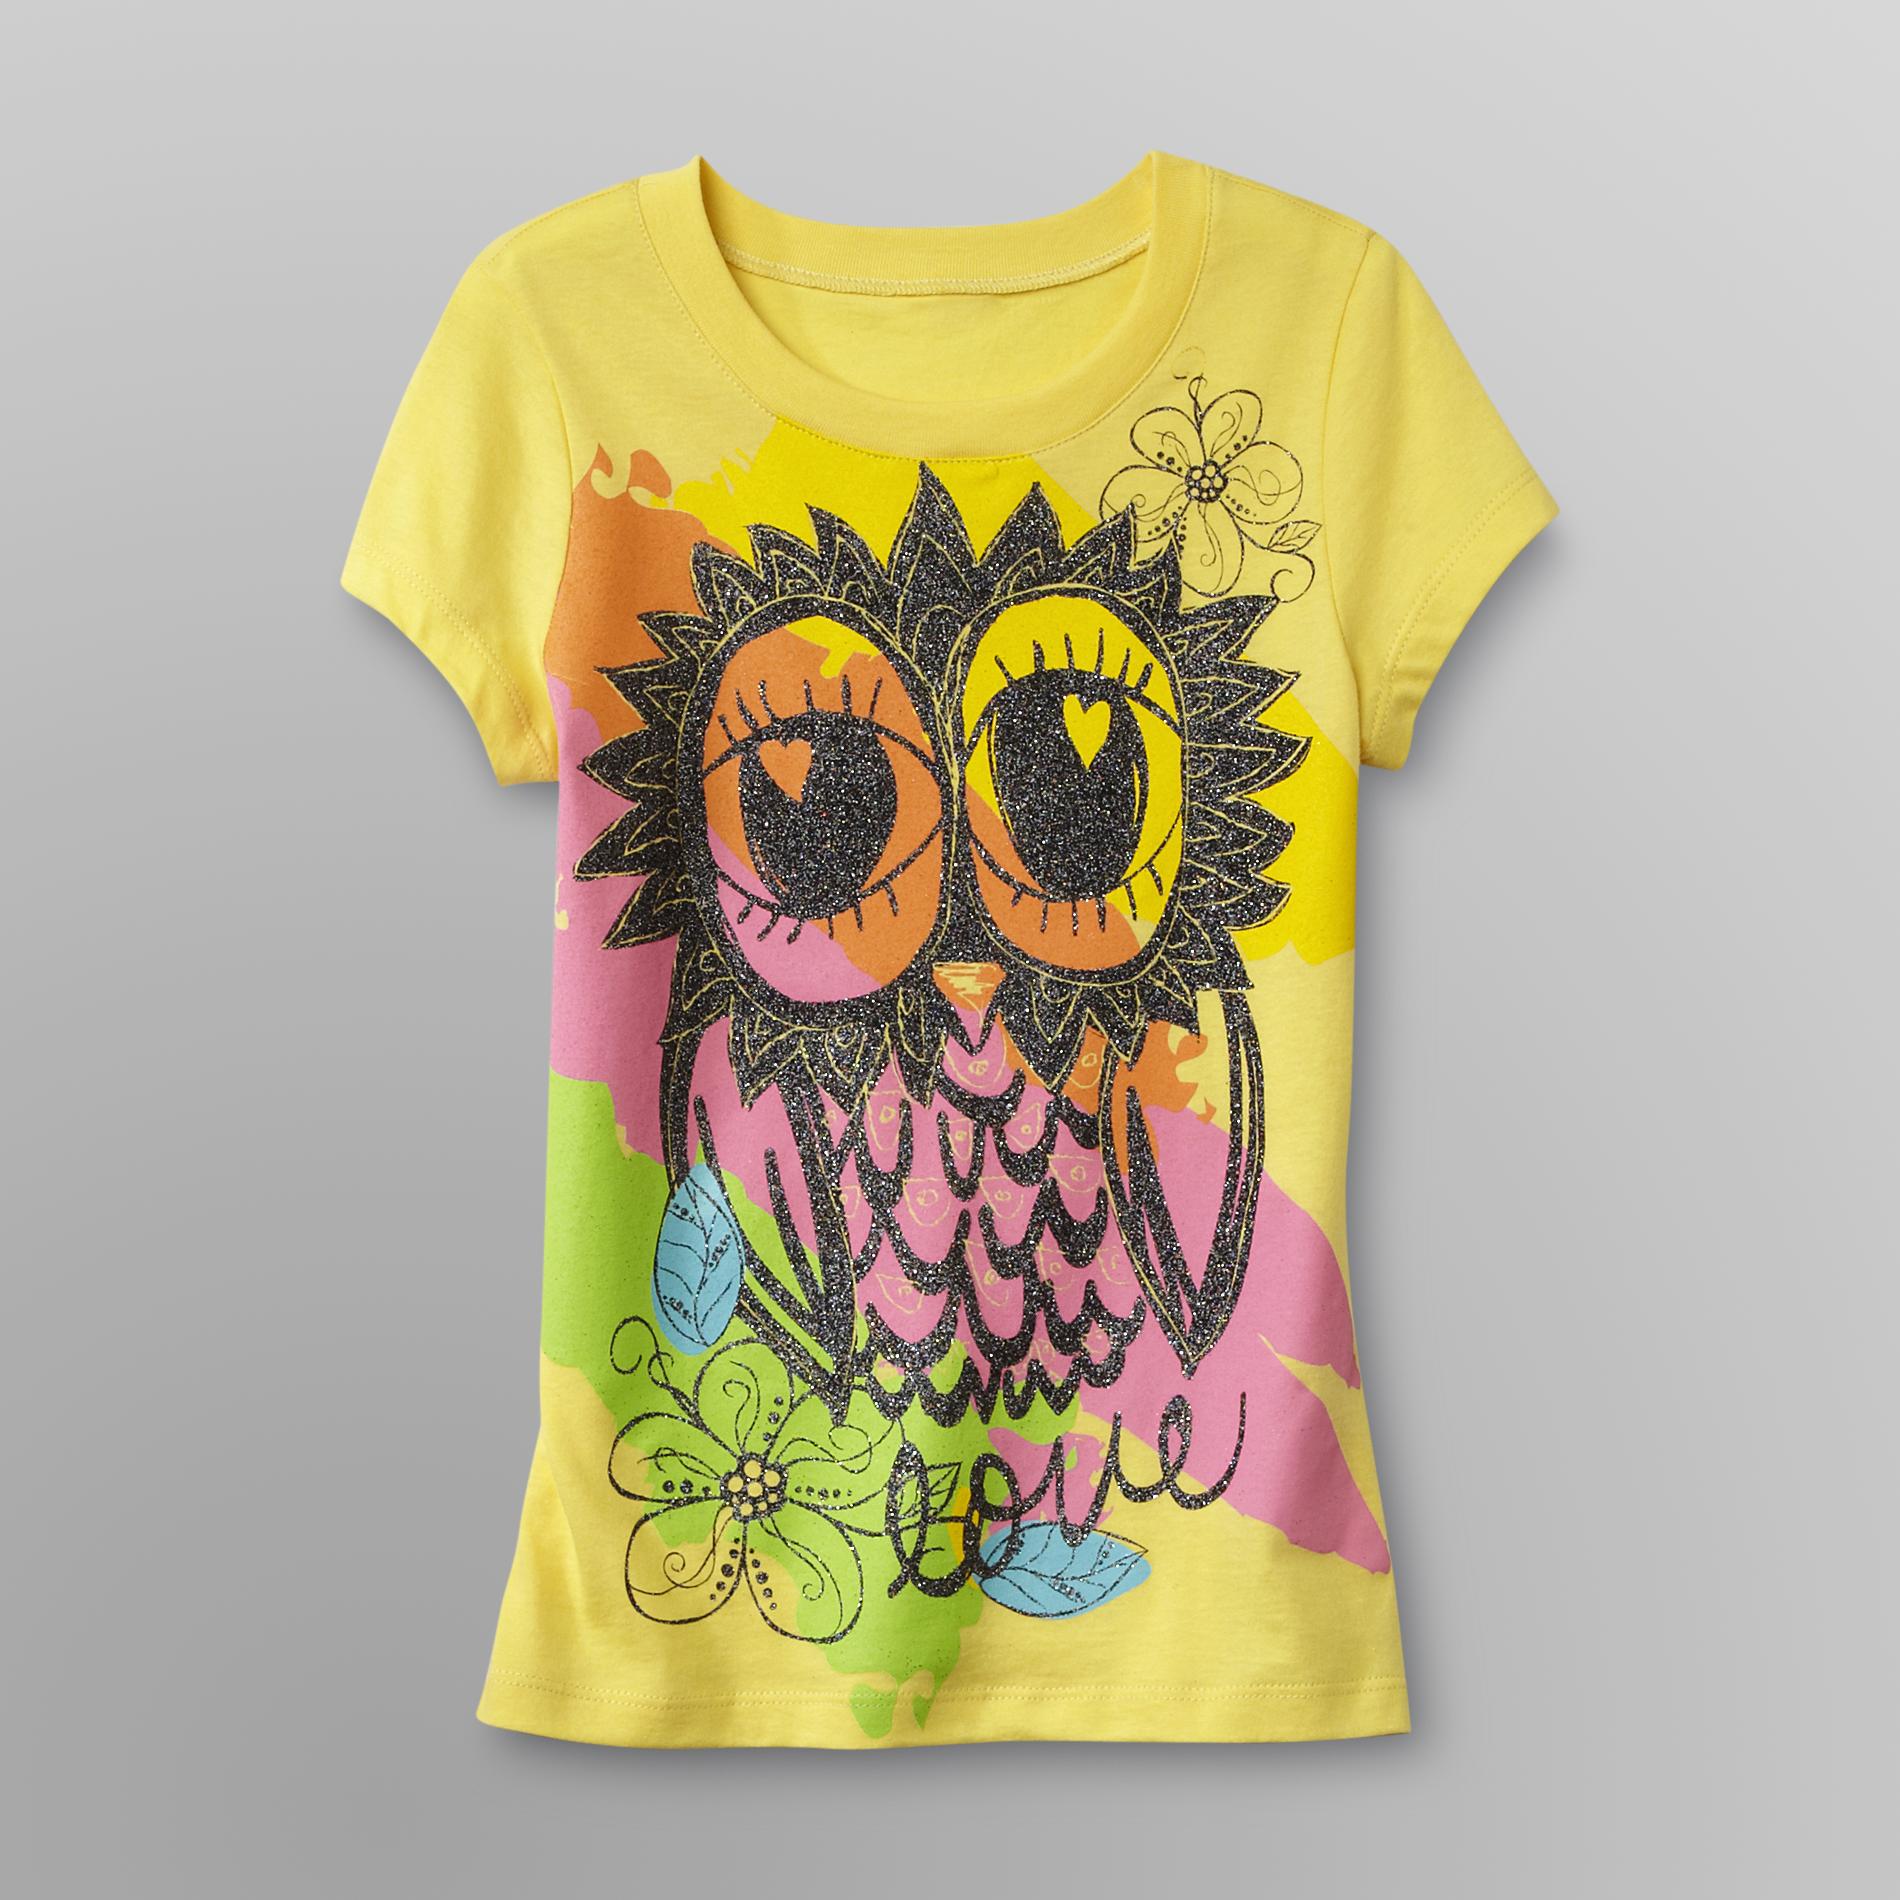 Route 66 Girl's Glitter T-Shirt - Owl/Love